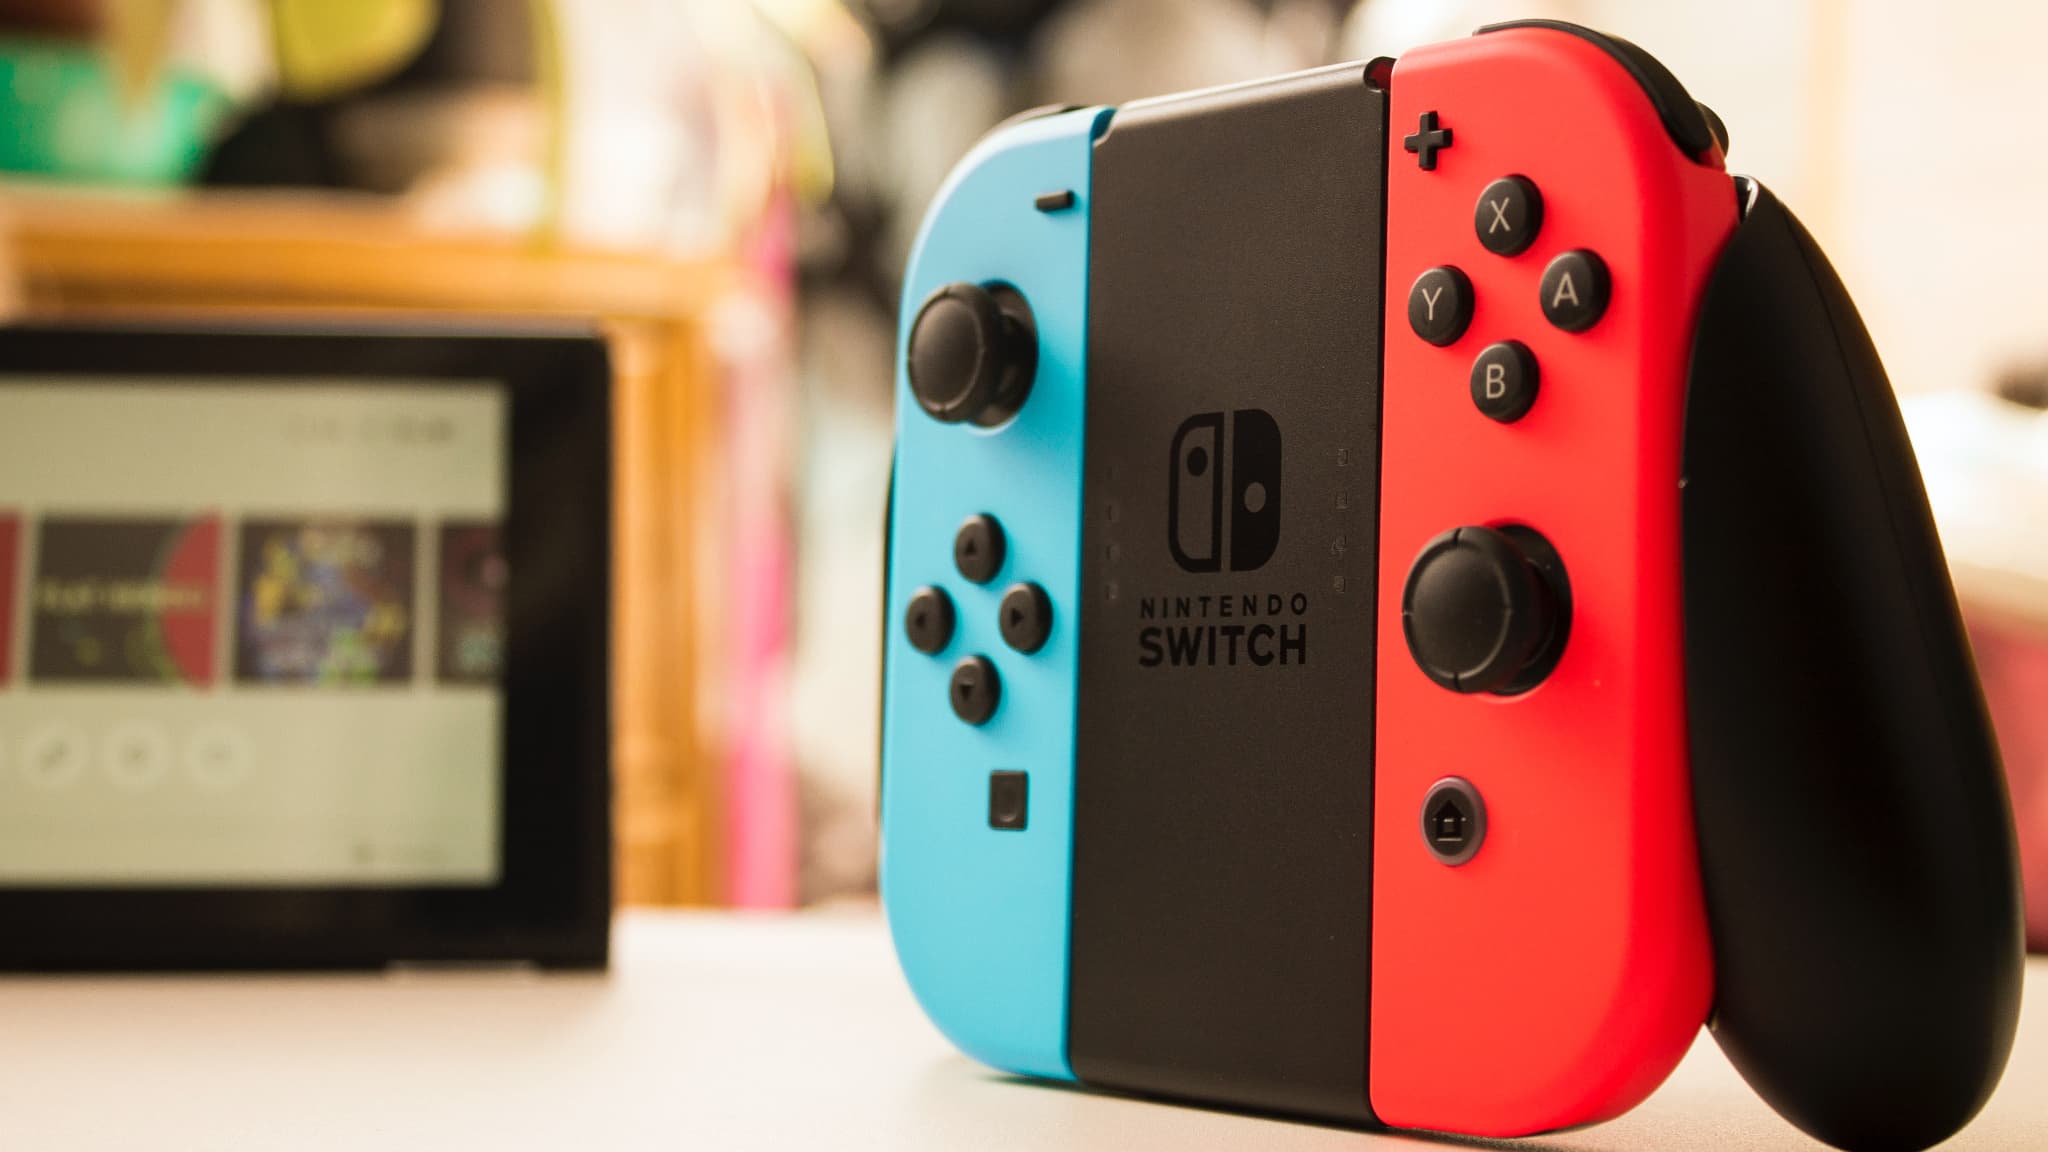 Joystick de remplacement pour manette Joy-Con Nintendo Switch, Swit